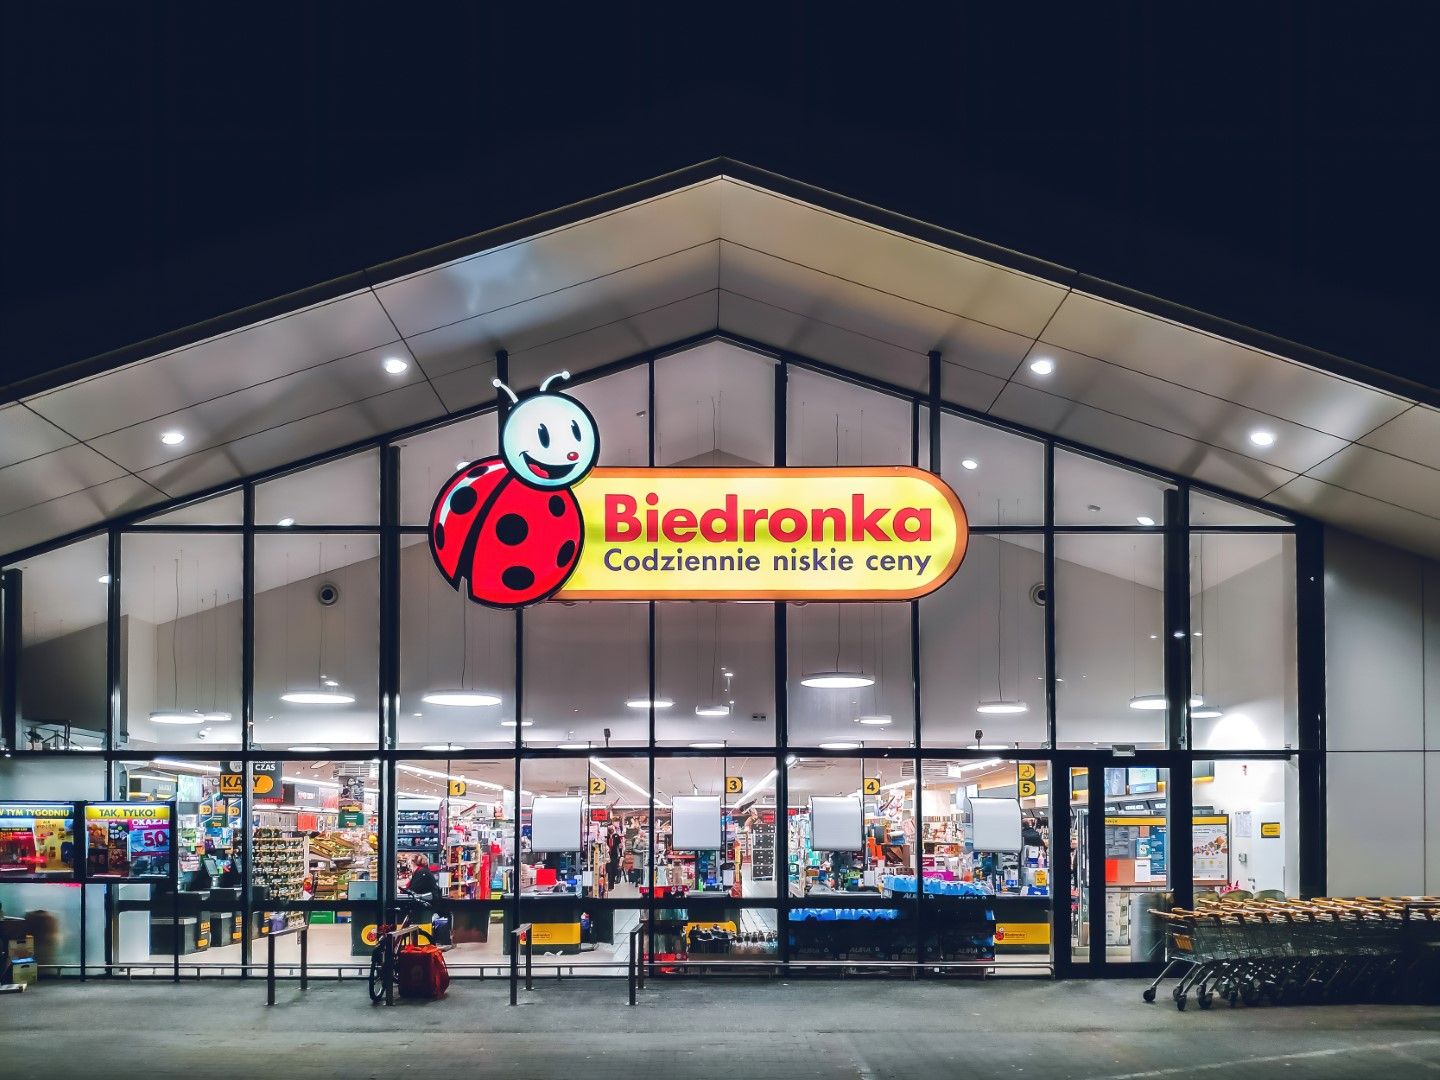 "Жерониму Мартинш" е собственик на най-голямата в Полша верига супермаркети Биедронка (Biedronka)